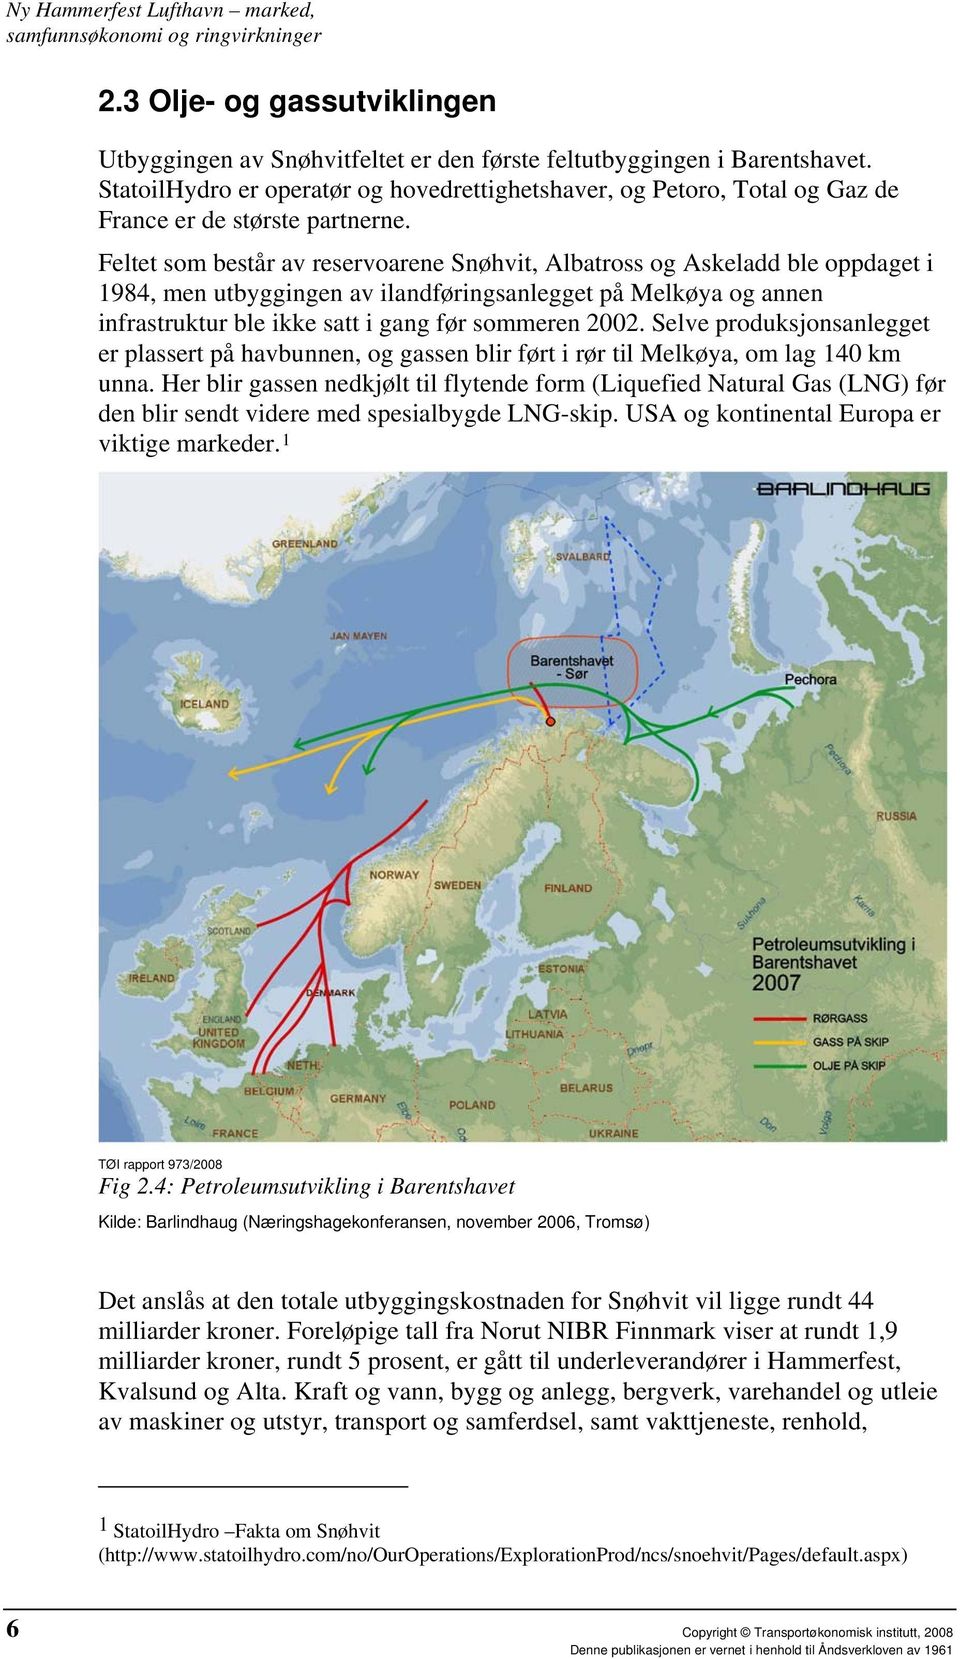 Feltet som består av reservoarene Snøhvit, Albatross og Askeladd ble oppdaget i 1984, men utbyggingen av ilandføringsanlegget på Melkøya og annen infrastruktur ble ikke satt i gang før sommeren 2002.